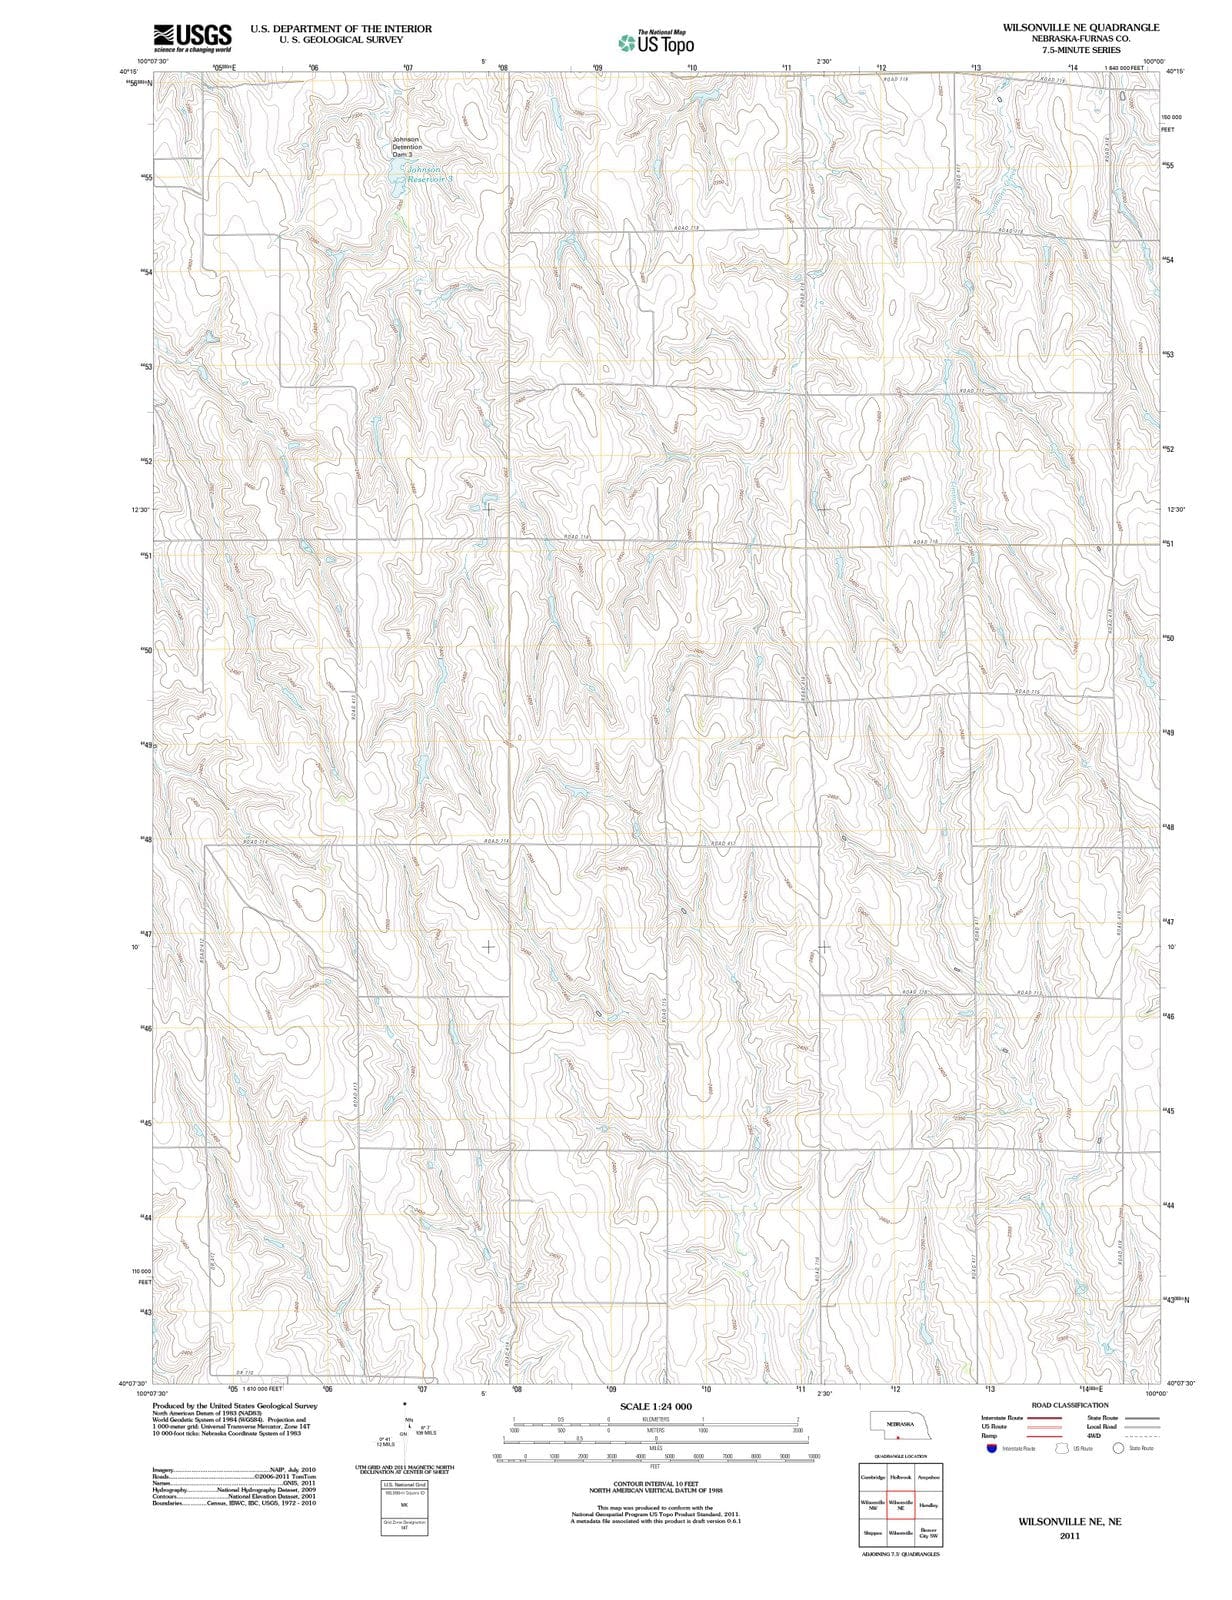 2011 Wilsonville, NE - Nebraska - USGS Topographic Map v2